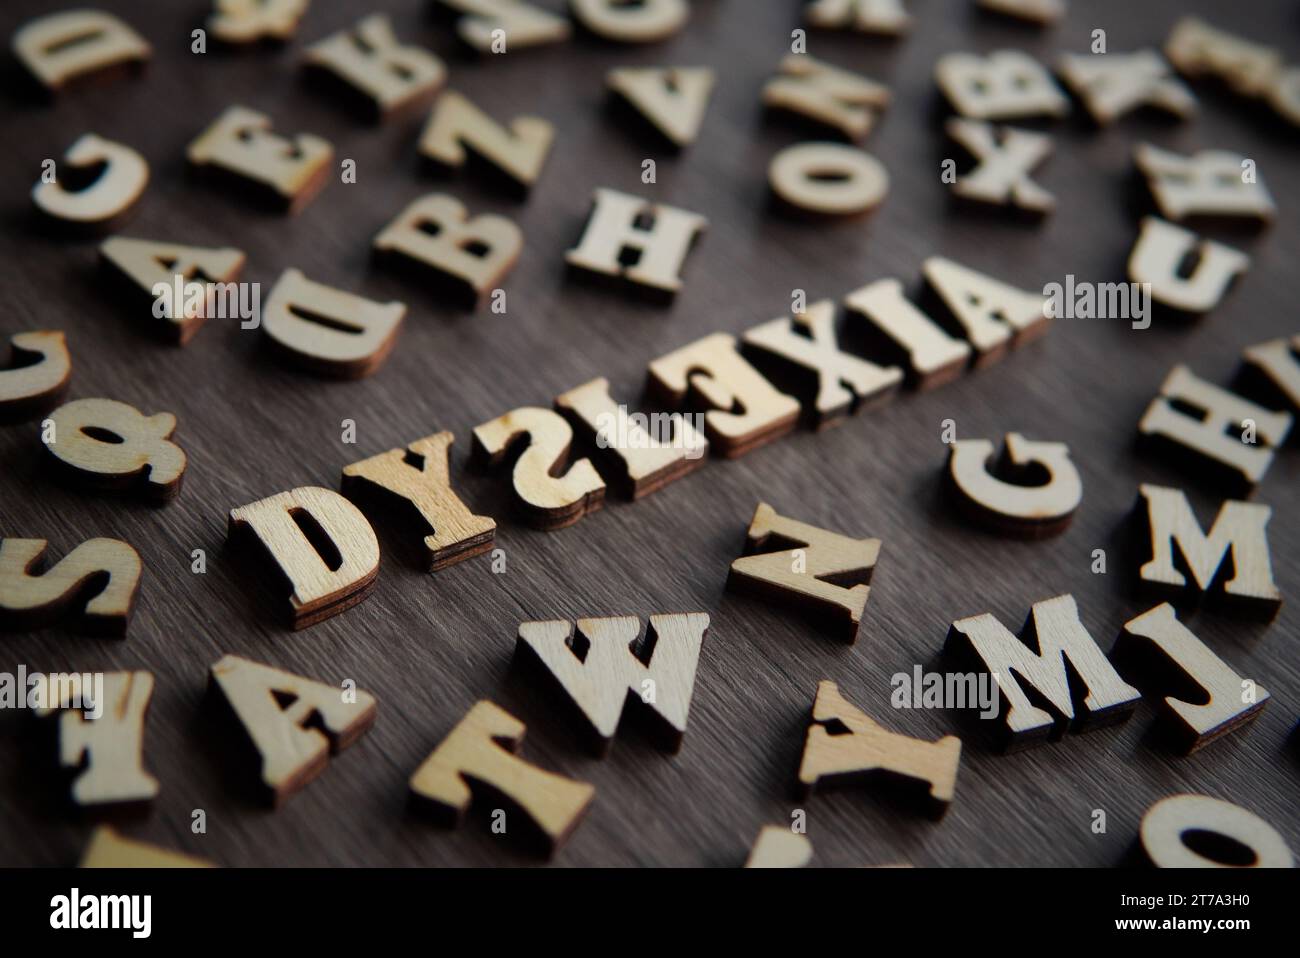 Immagine ravvicinata della DISLESSIA di testo circondata da un alfabeto sparso. Foto Stock